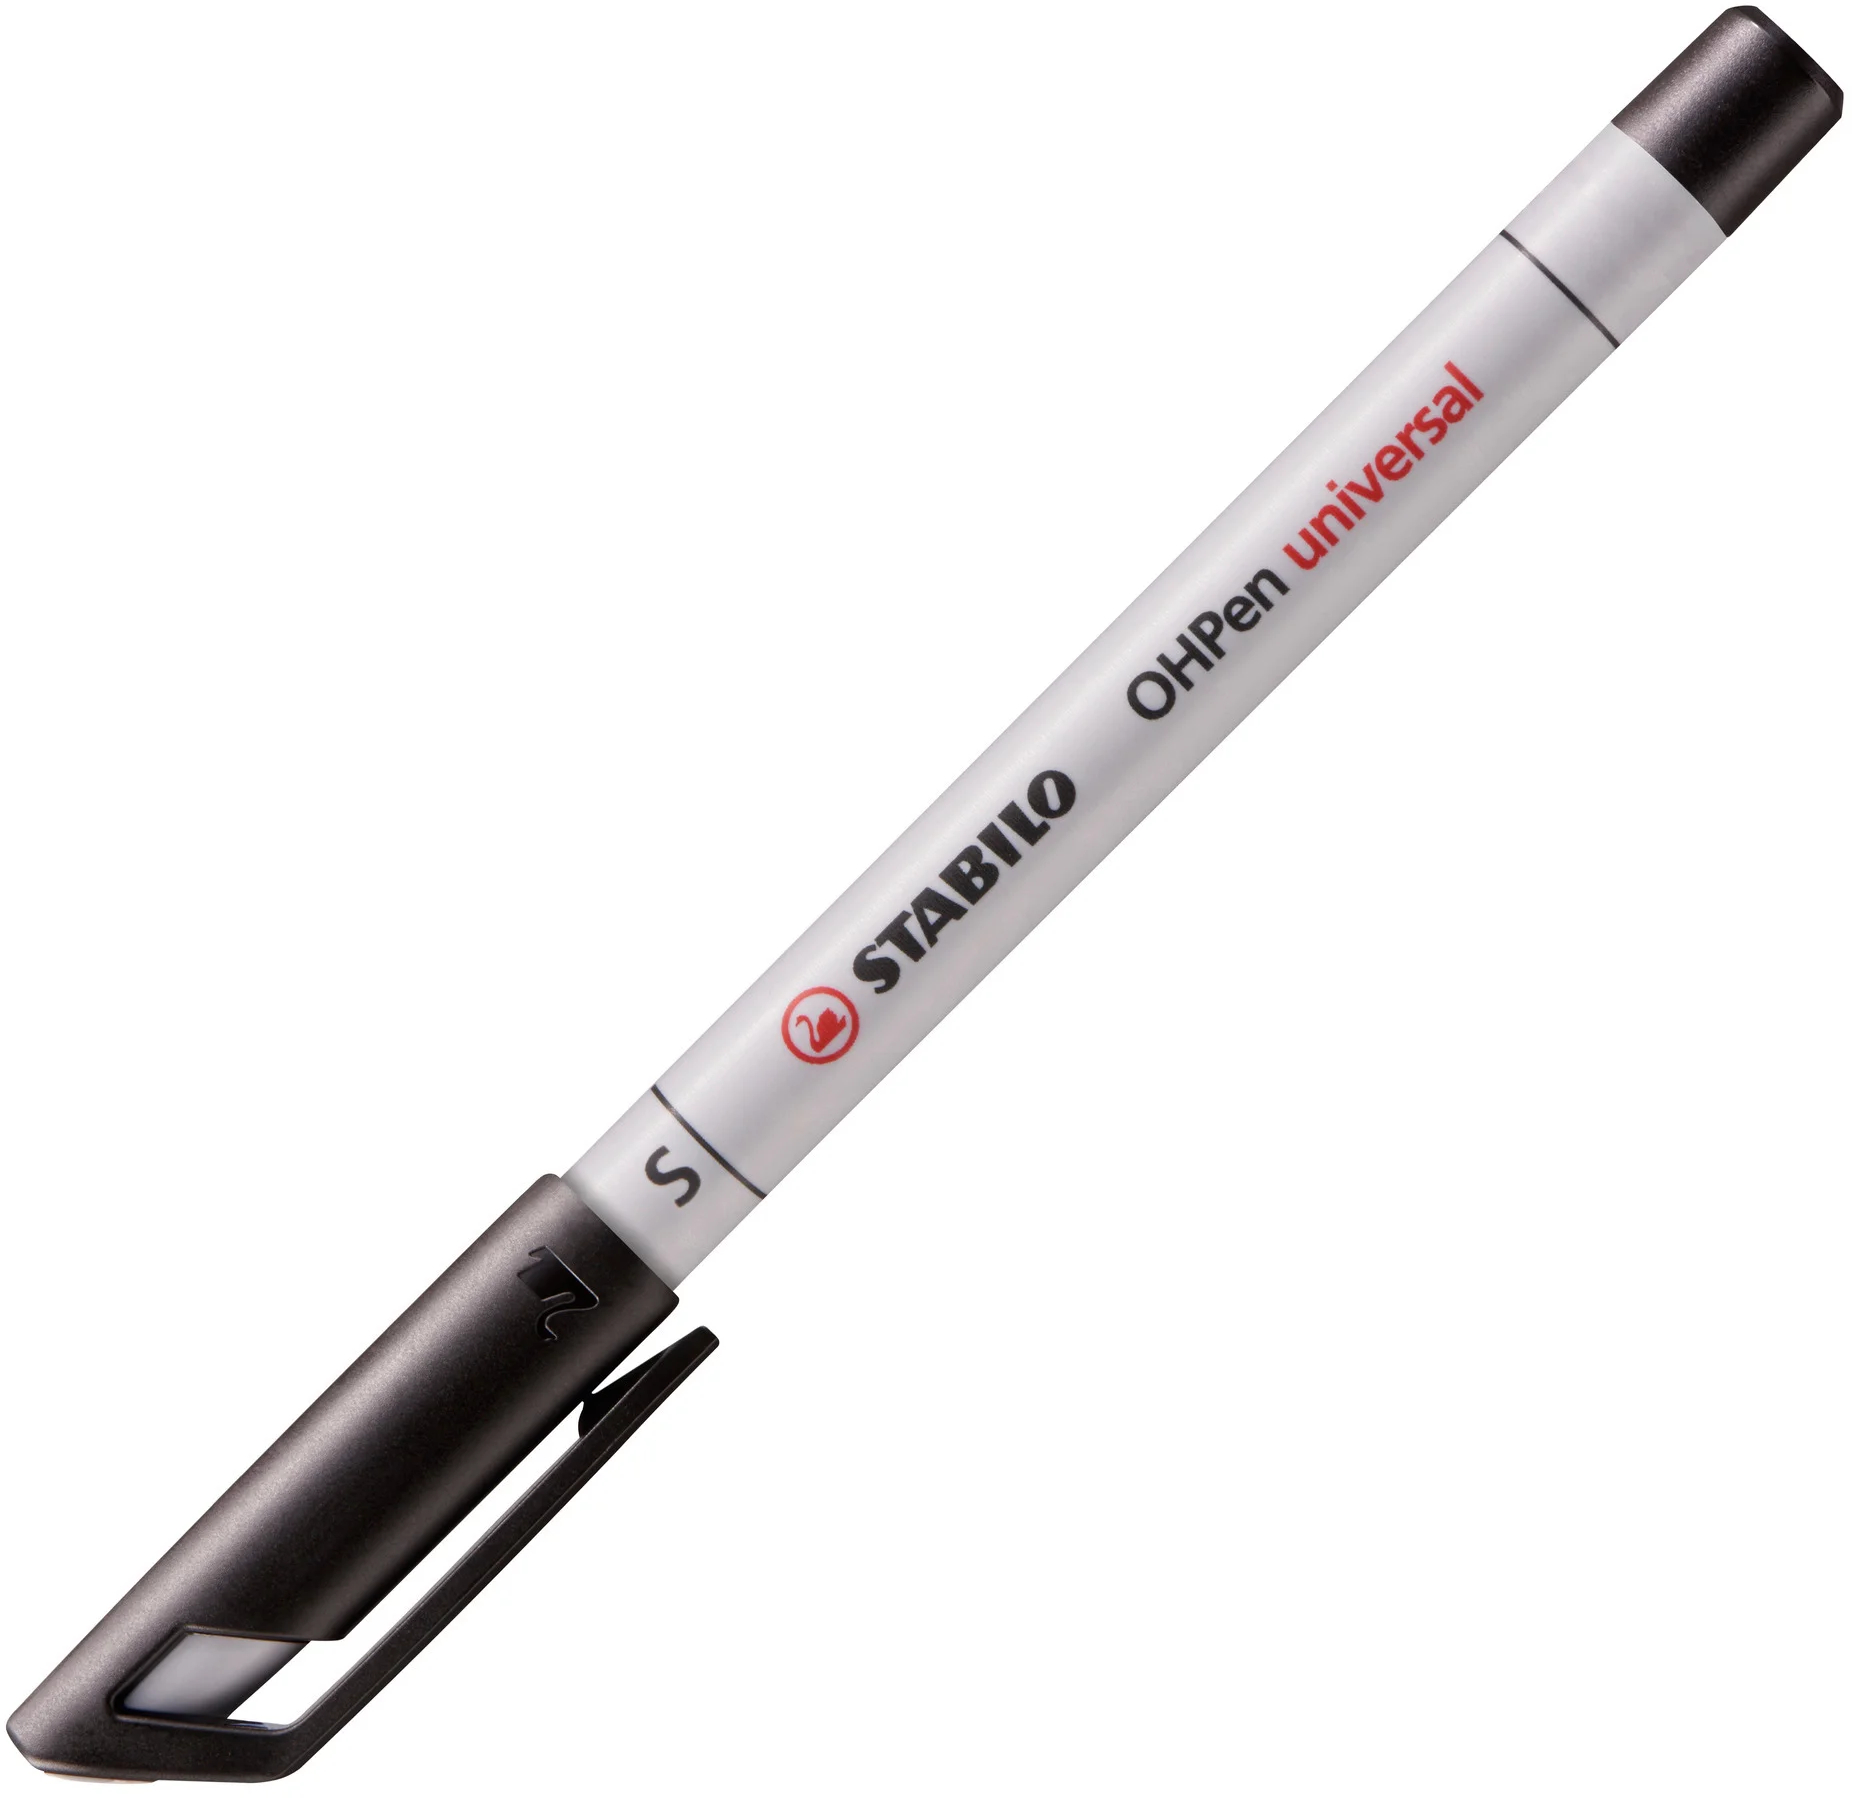 STABILO OHP Pen non-perm. S 851/46 noir